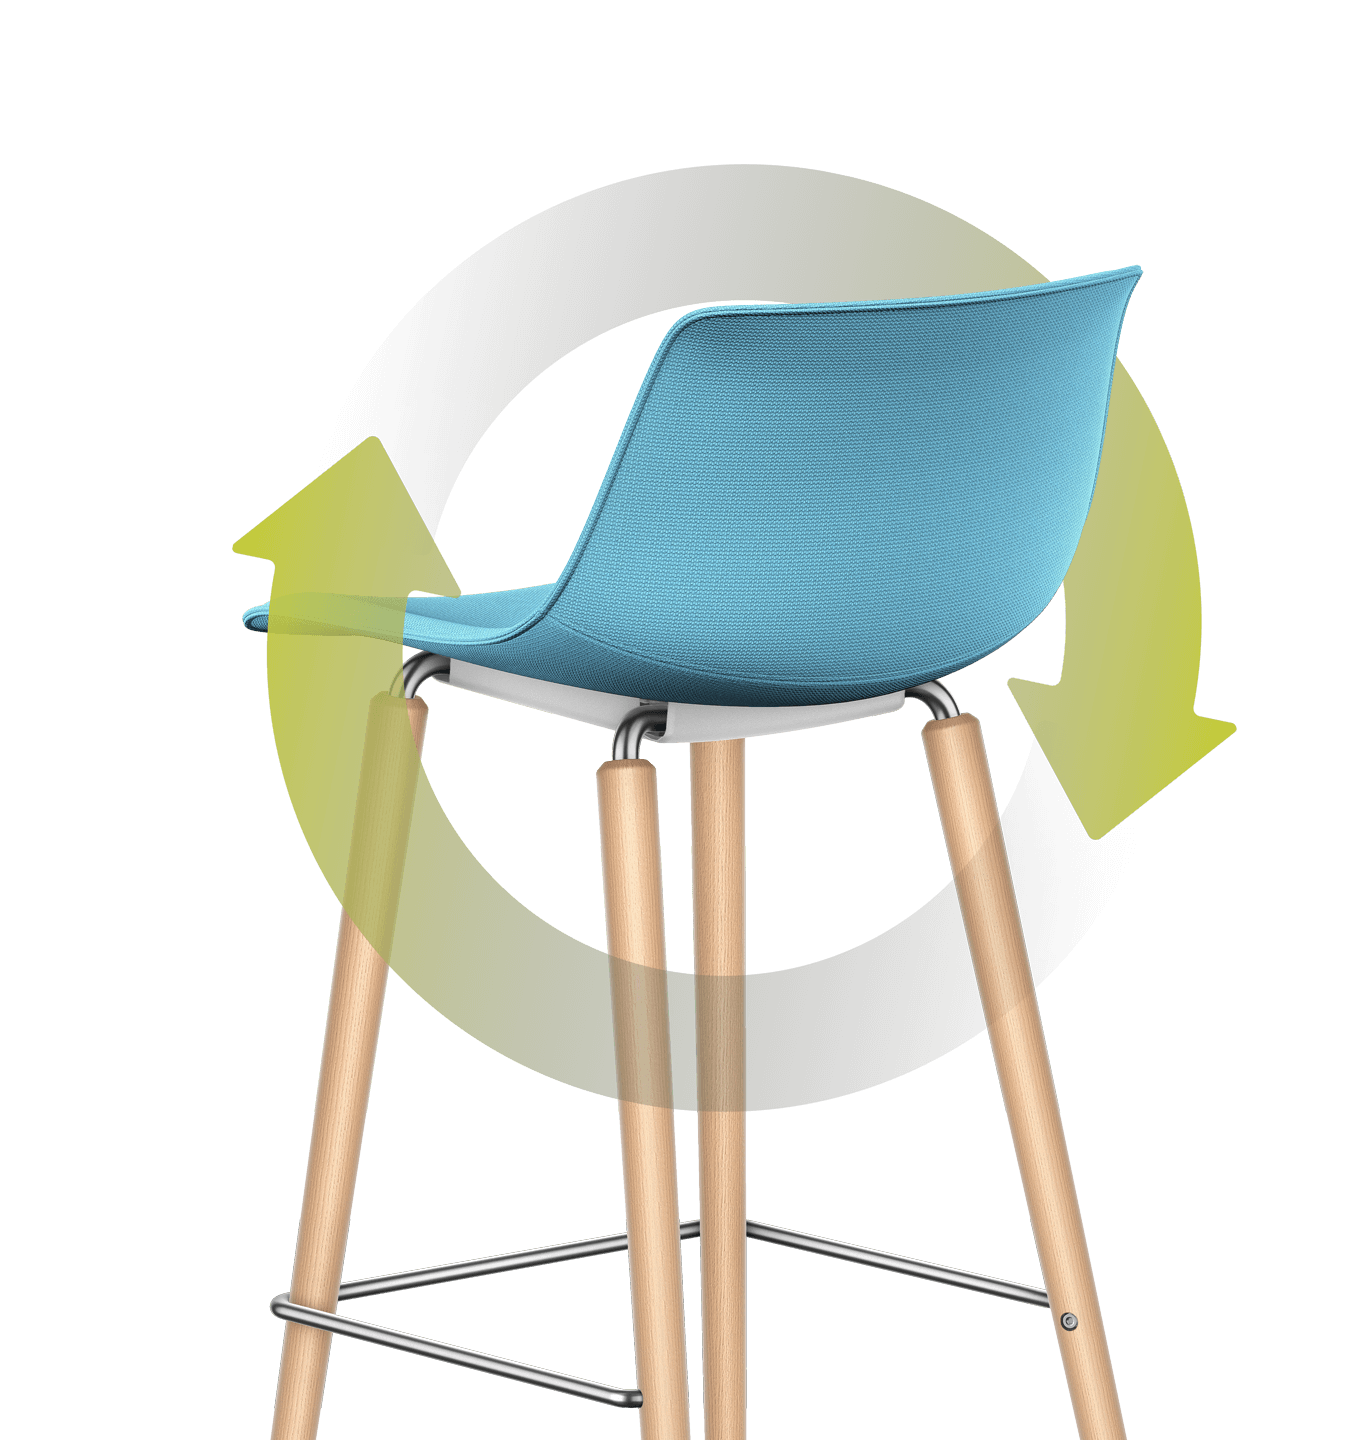 Omkring barstolen med blå sæde- og rygpolstring og firbenet træstel slynger sig et illustreret grønt blad. Stænglen snor sig cirkelformet omkring stolen, og bladet læner sig mod bagsiden af rygpolstringen.